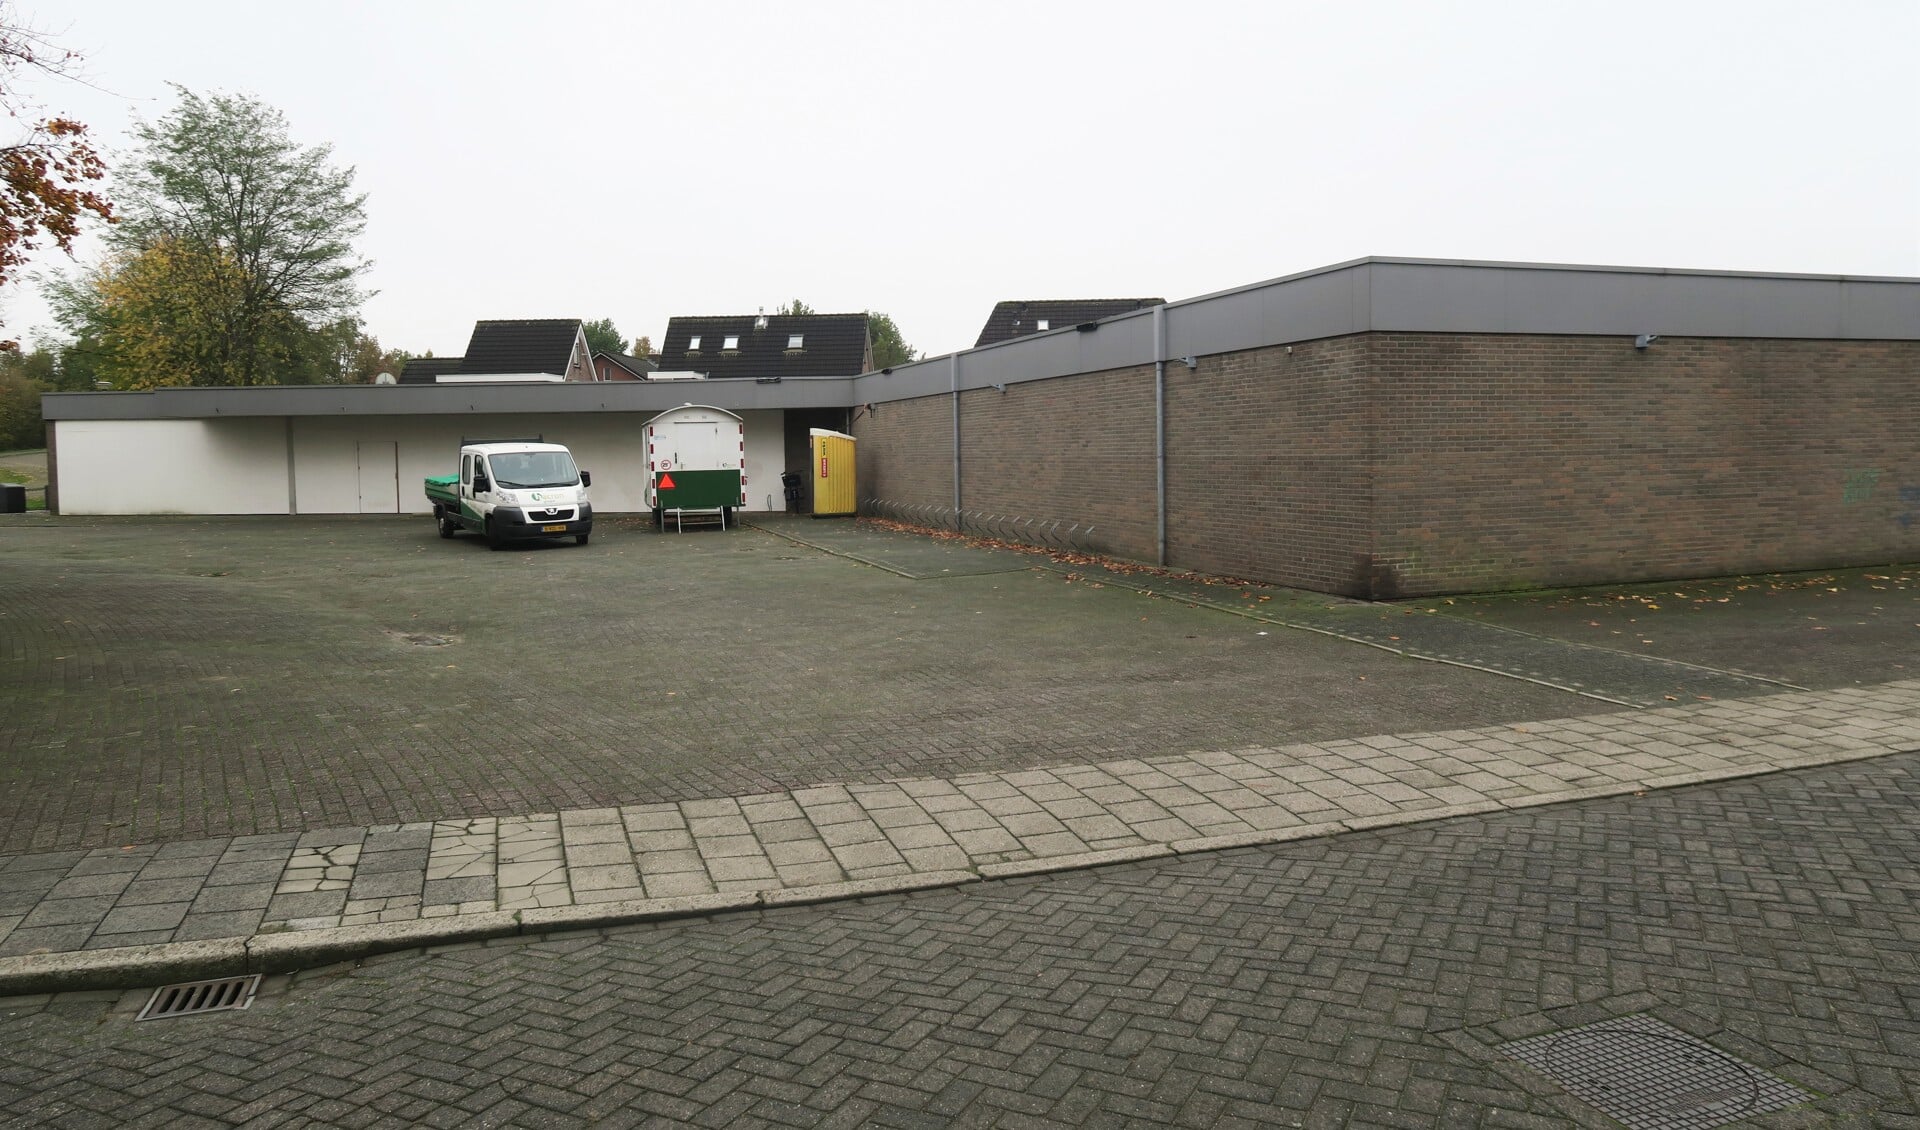 Het bedrijfspand waarin voorheen een supermarkt was gevestigd en nu mogelijk een sportschool komt. Foto: Theo Huijskes